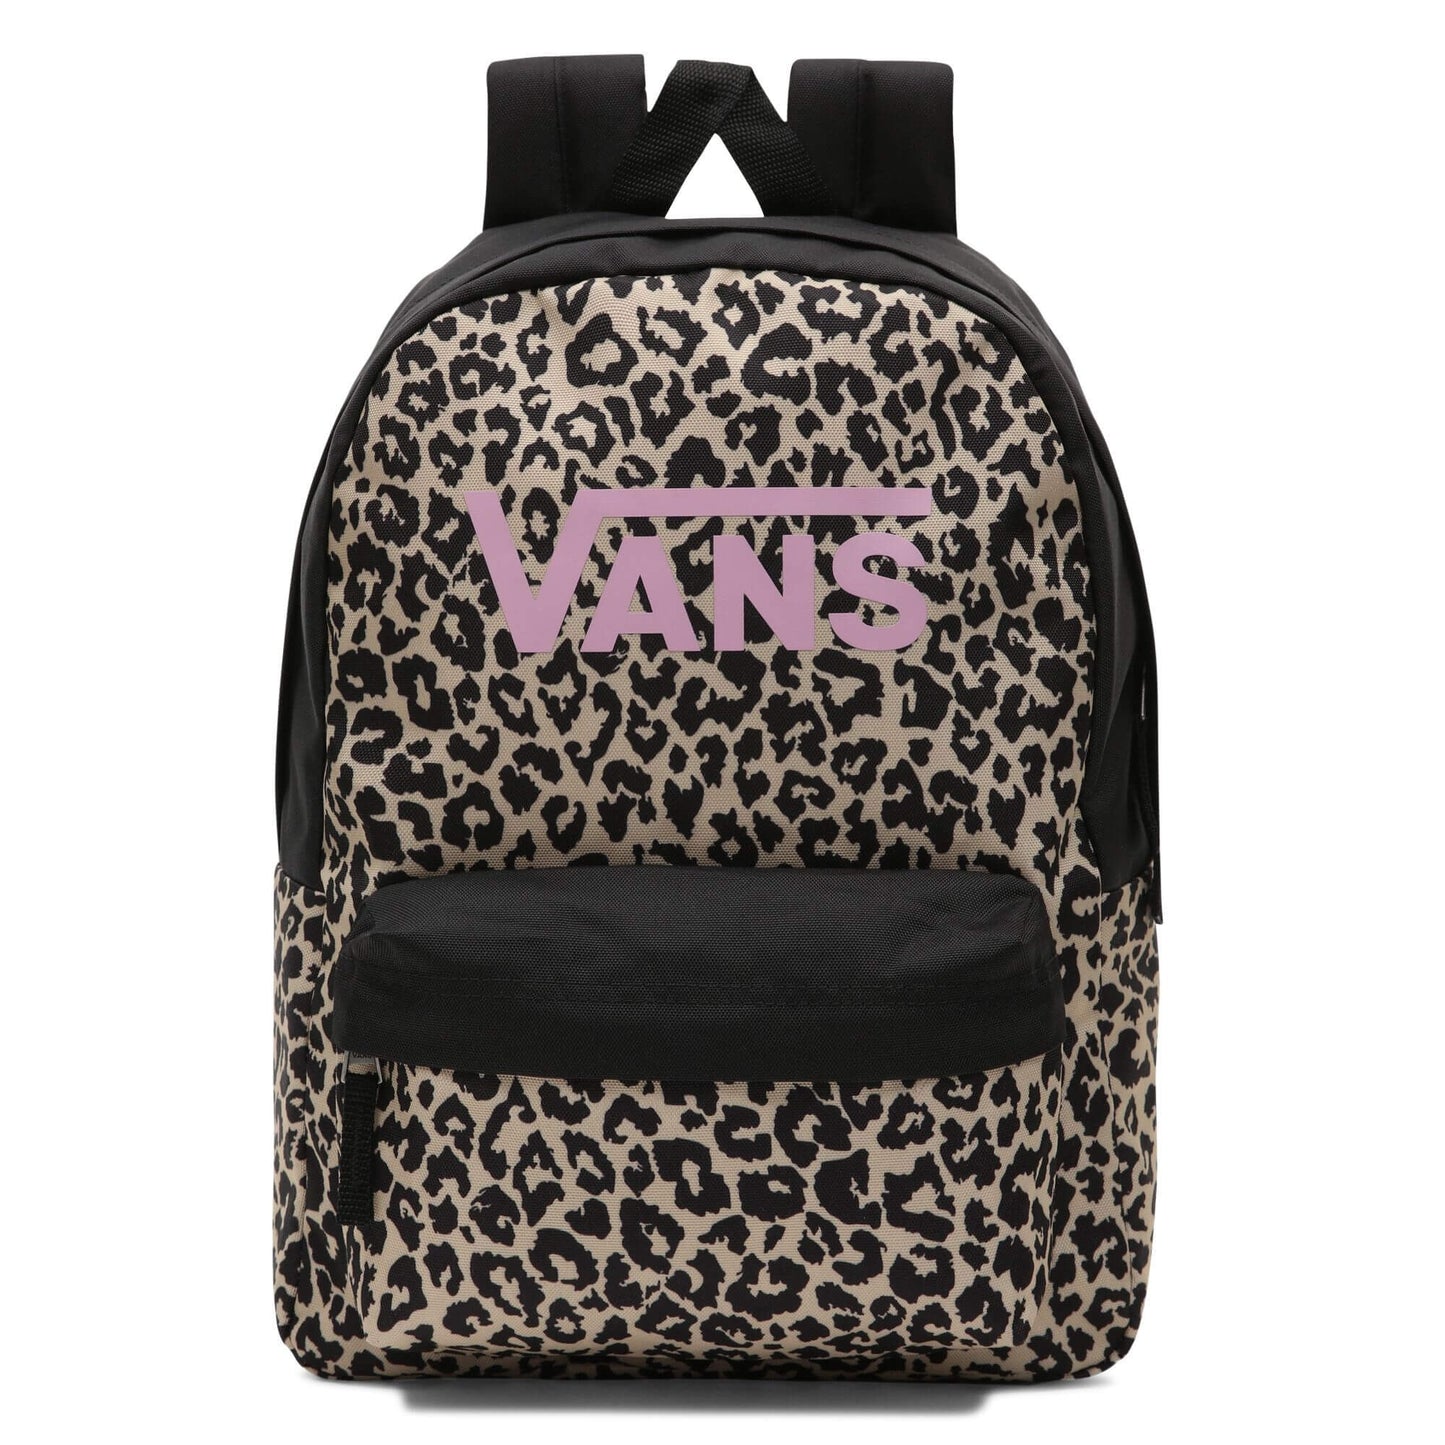 Vans Girls Realm Backpack Leopard Spot